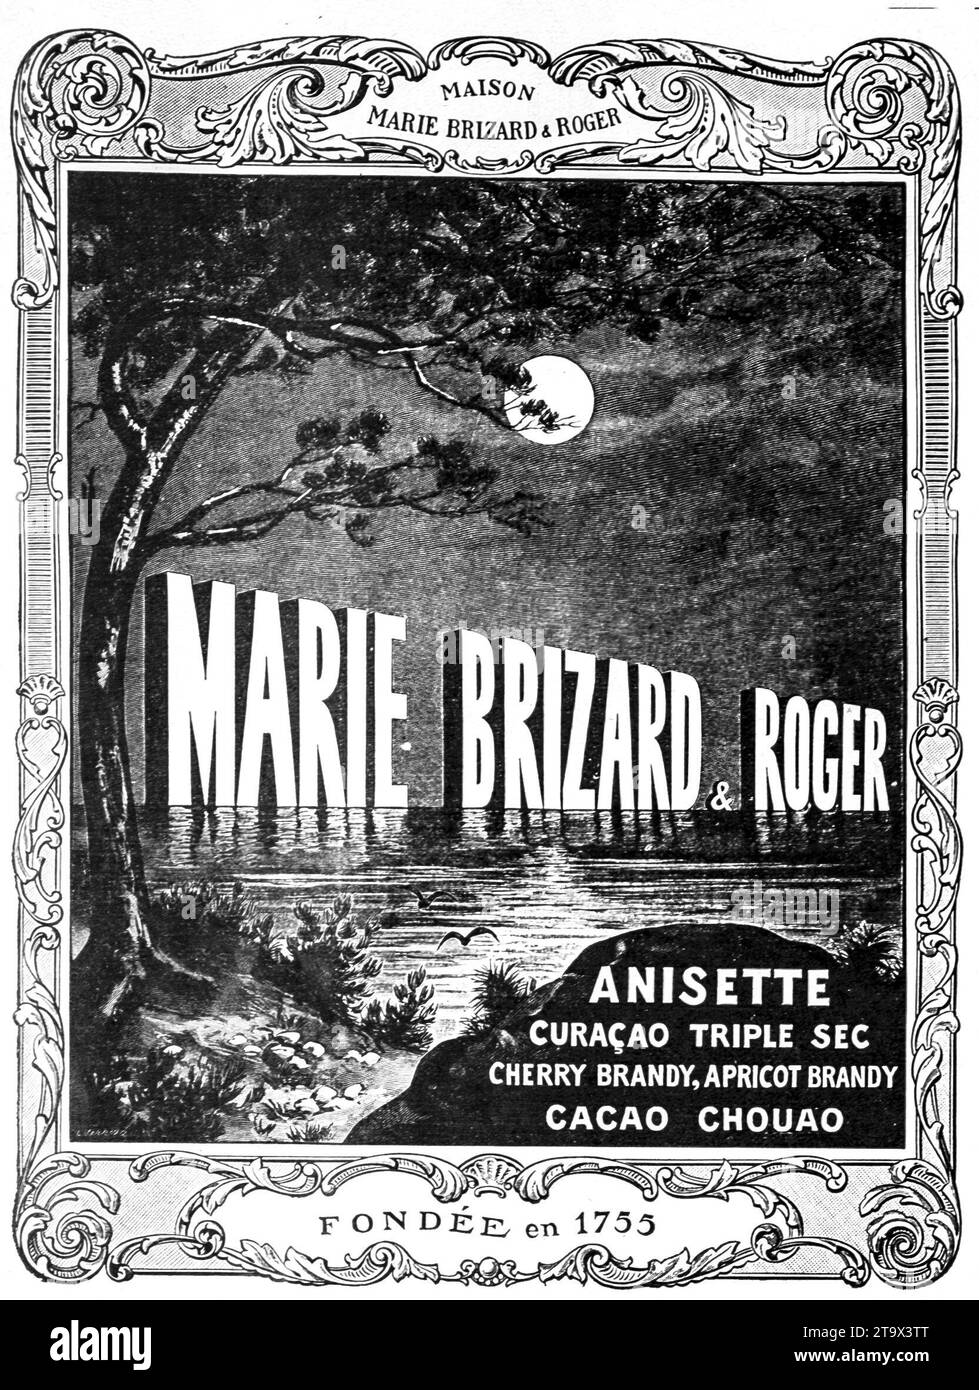 Pubblicità storica degli anni '1920 di Marie Brizard & Roger, fondata nel 1755, con una varietà di alcolici tra cui Anisette, Curaçao Triple sec e brandy di frutta. Foto Stock